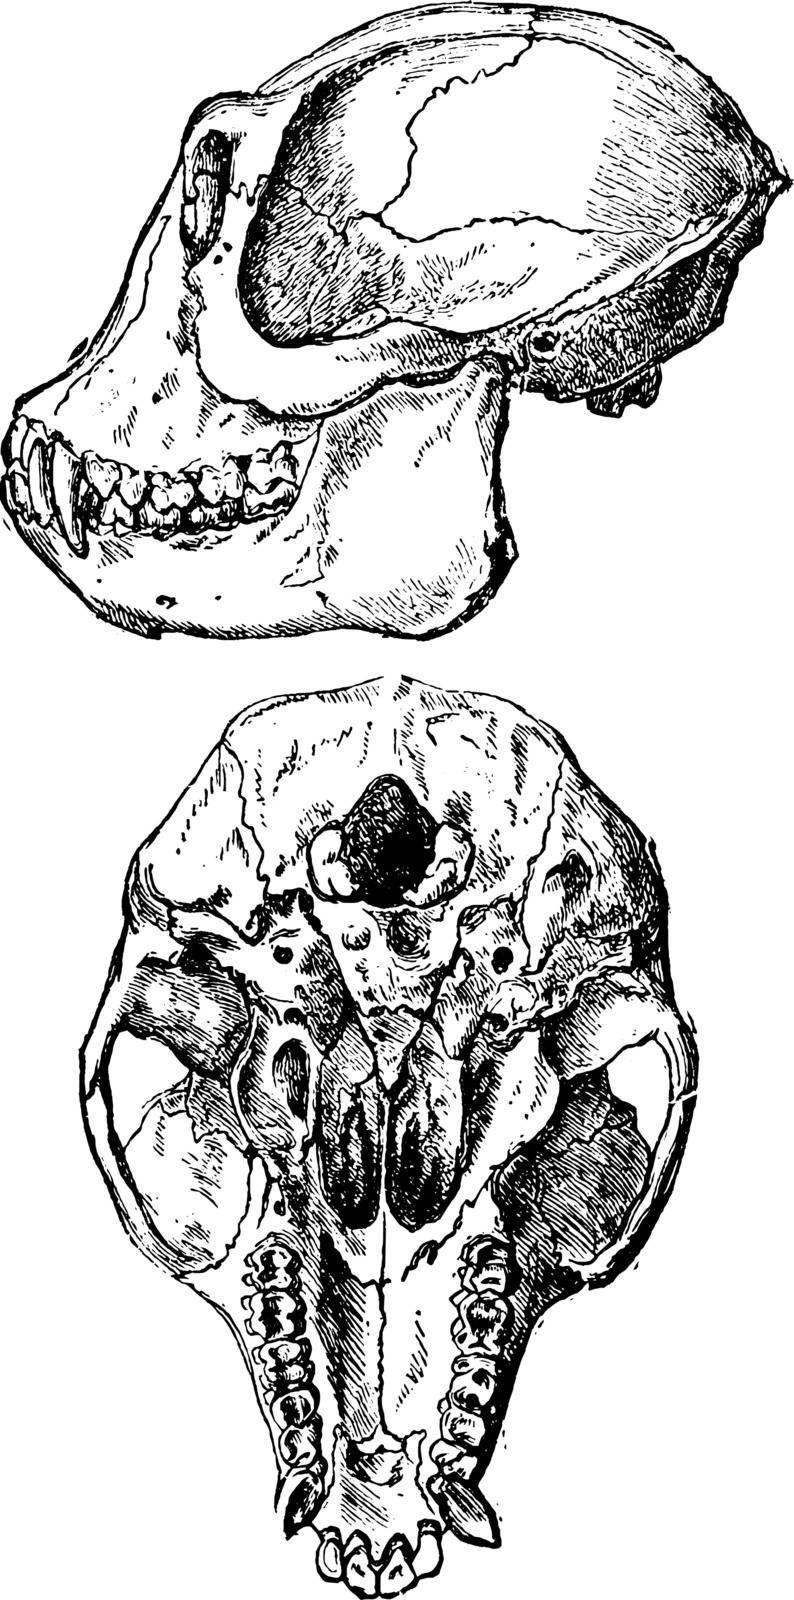 Ape Skull, vintage illustration. by Morphart